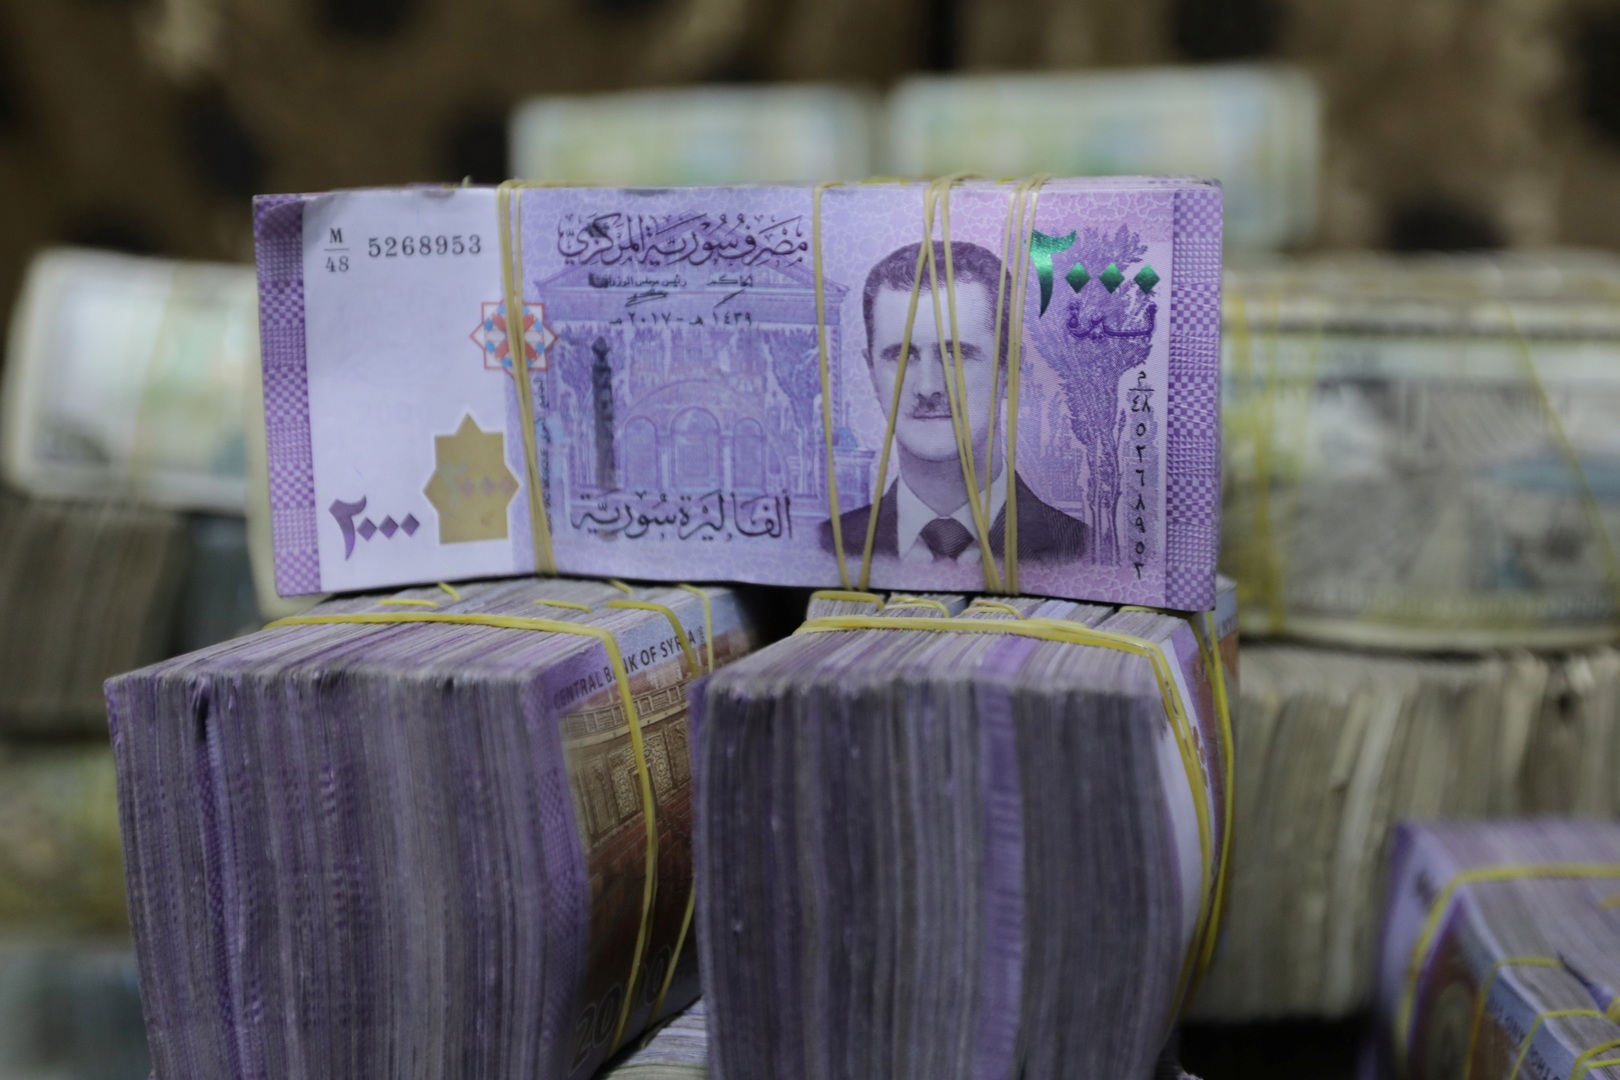 خبير اقتصادي : استدانة الحكومة السورية من البنك المركزي ستجل ديون على الأجيال القادمة وستزيد الفقر والتضخم